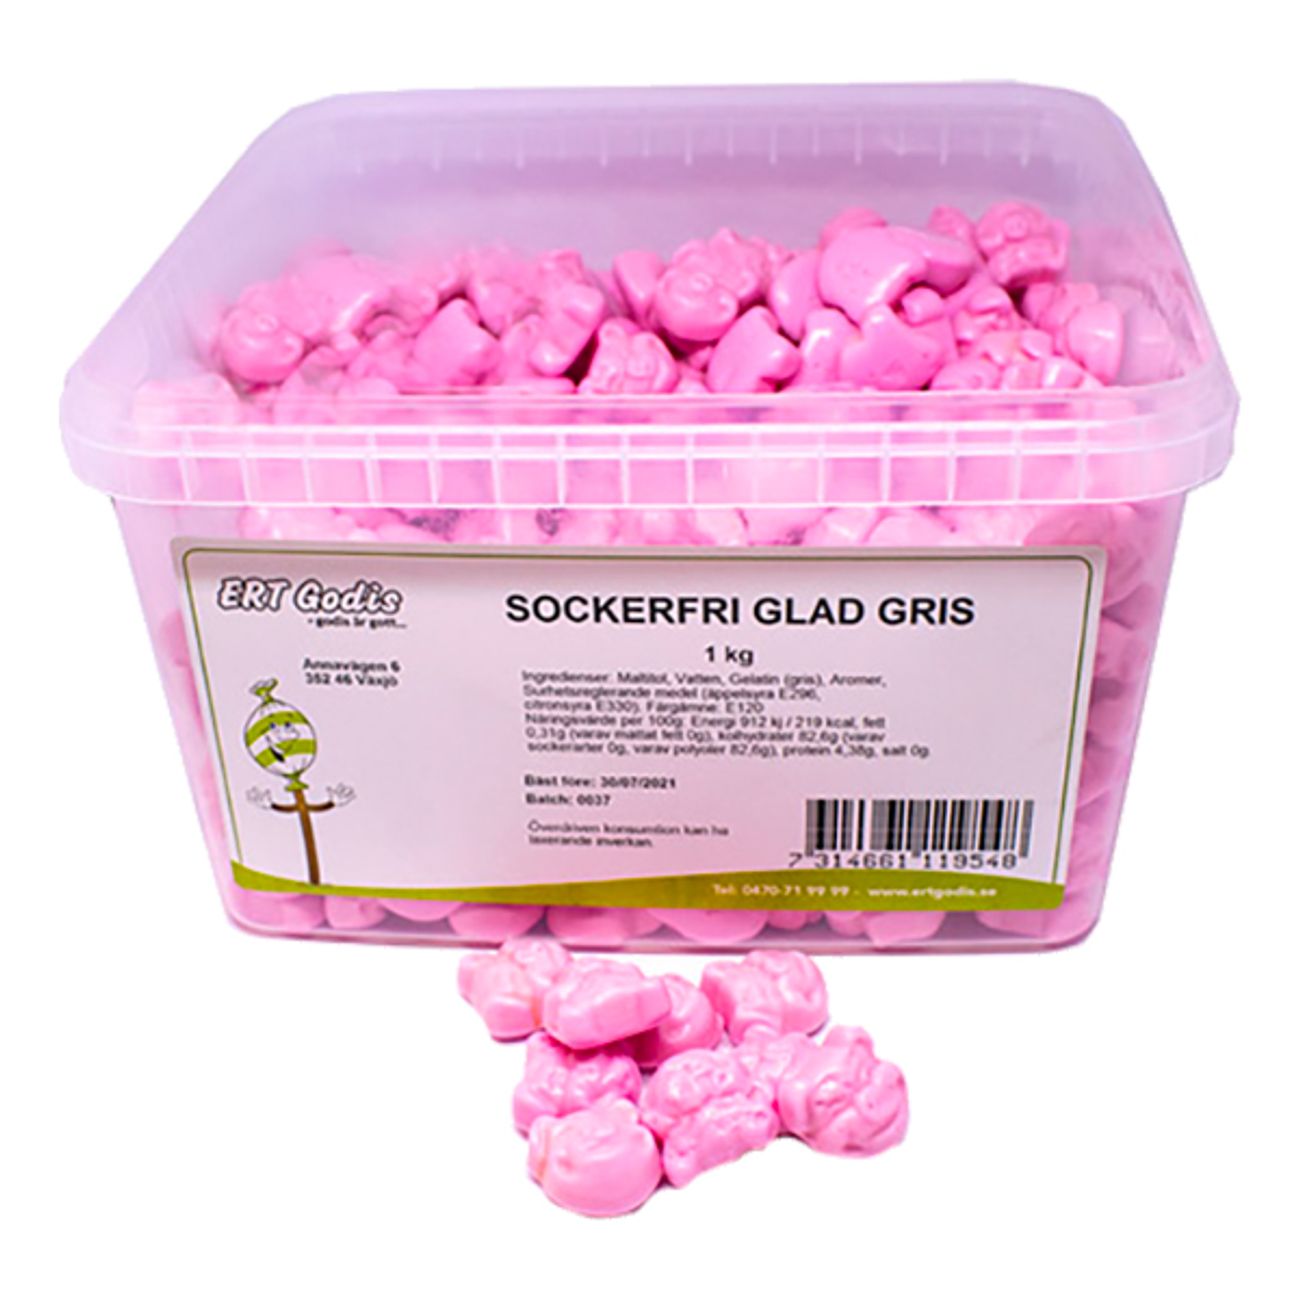 sockerfri-glad-gris-storpack-78967-1